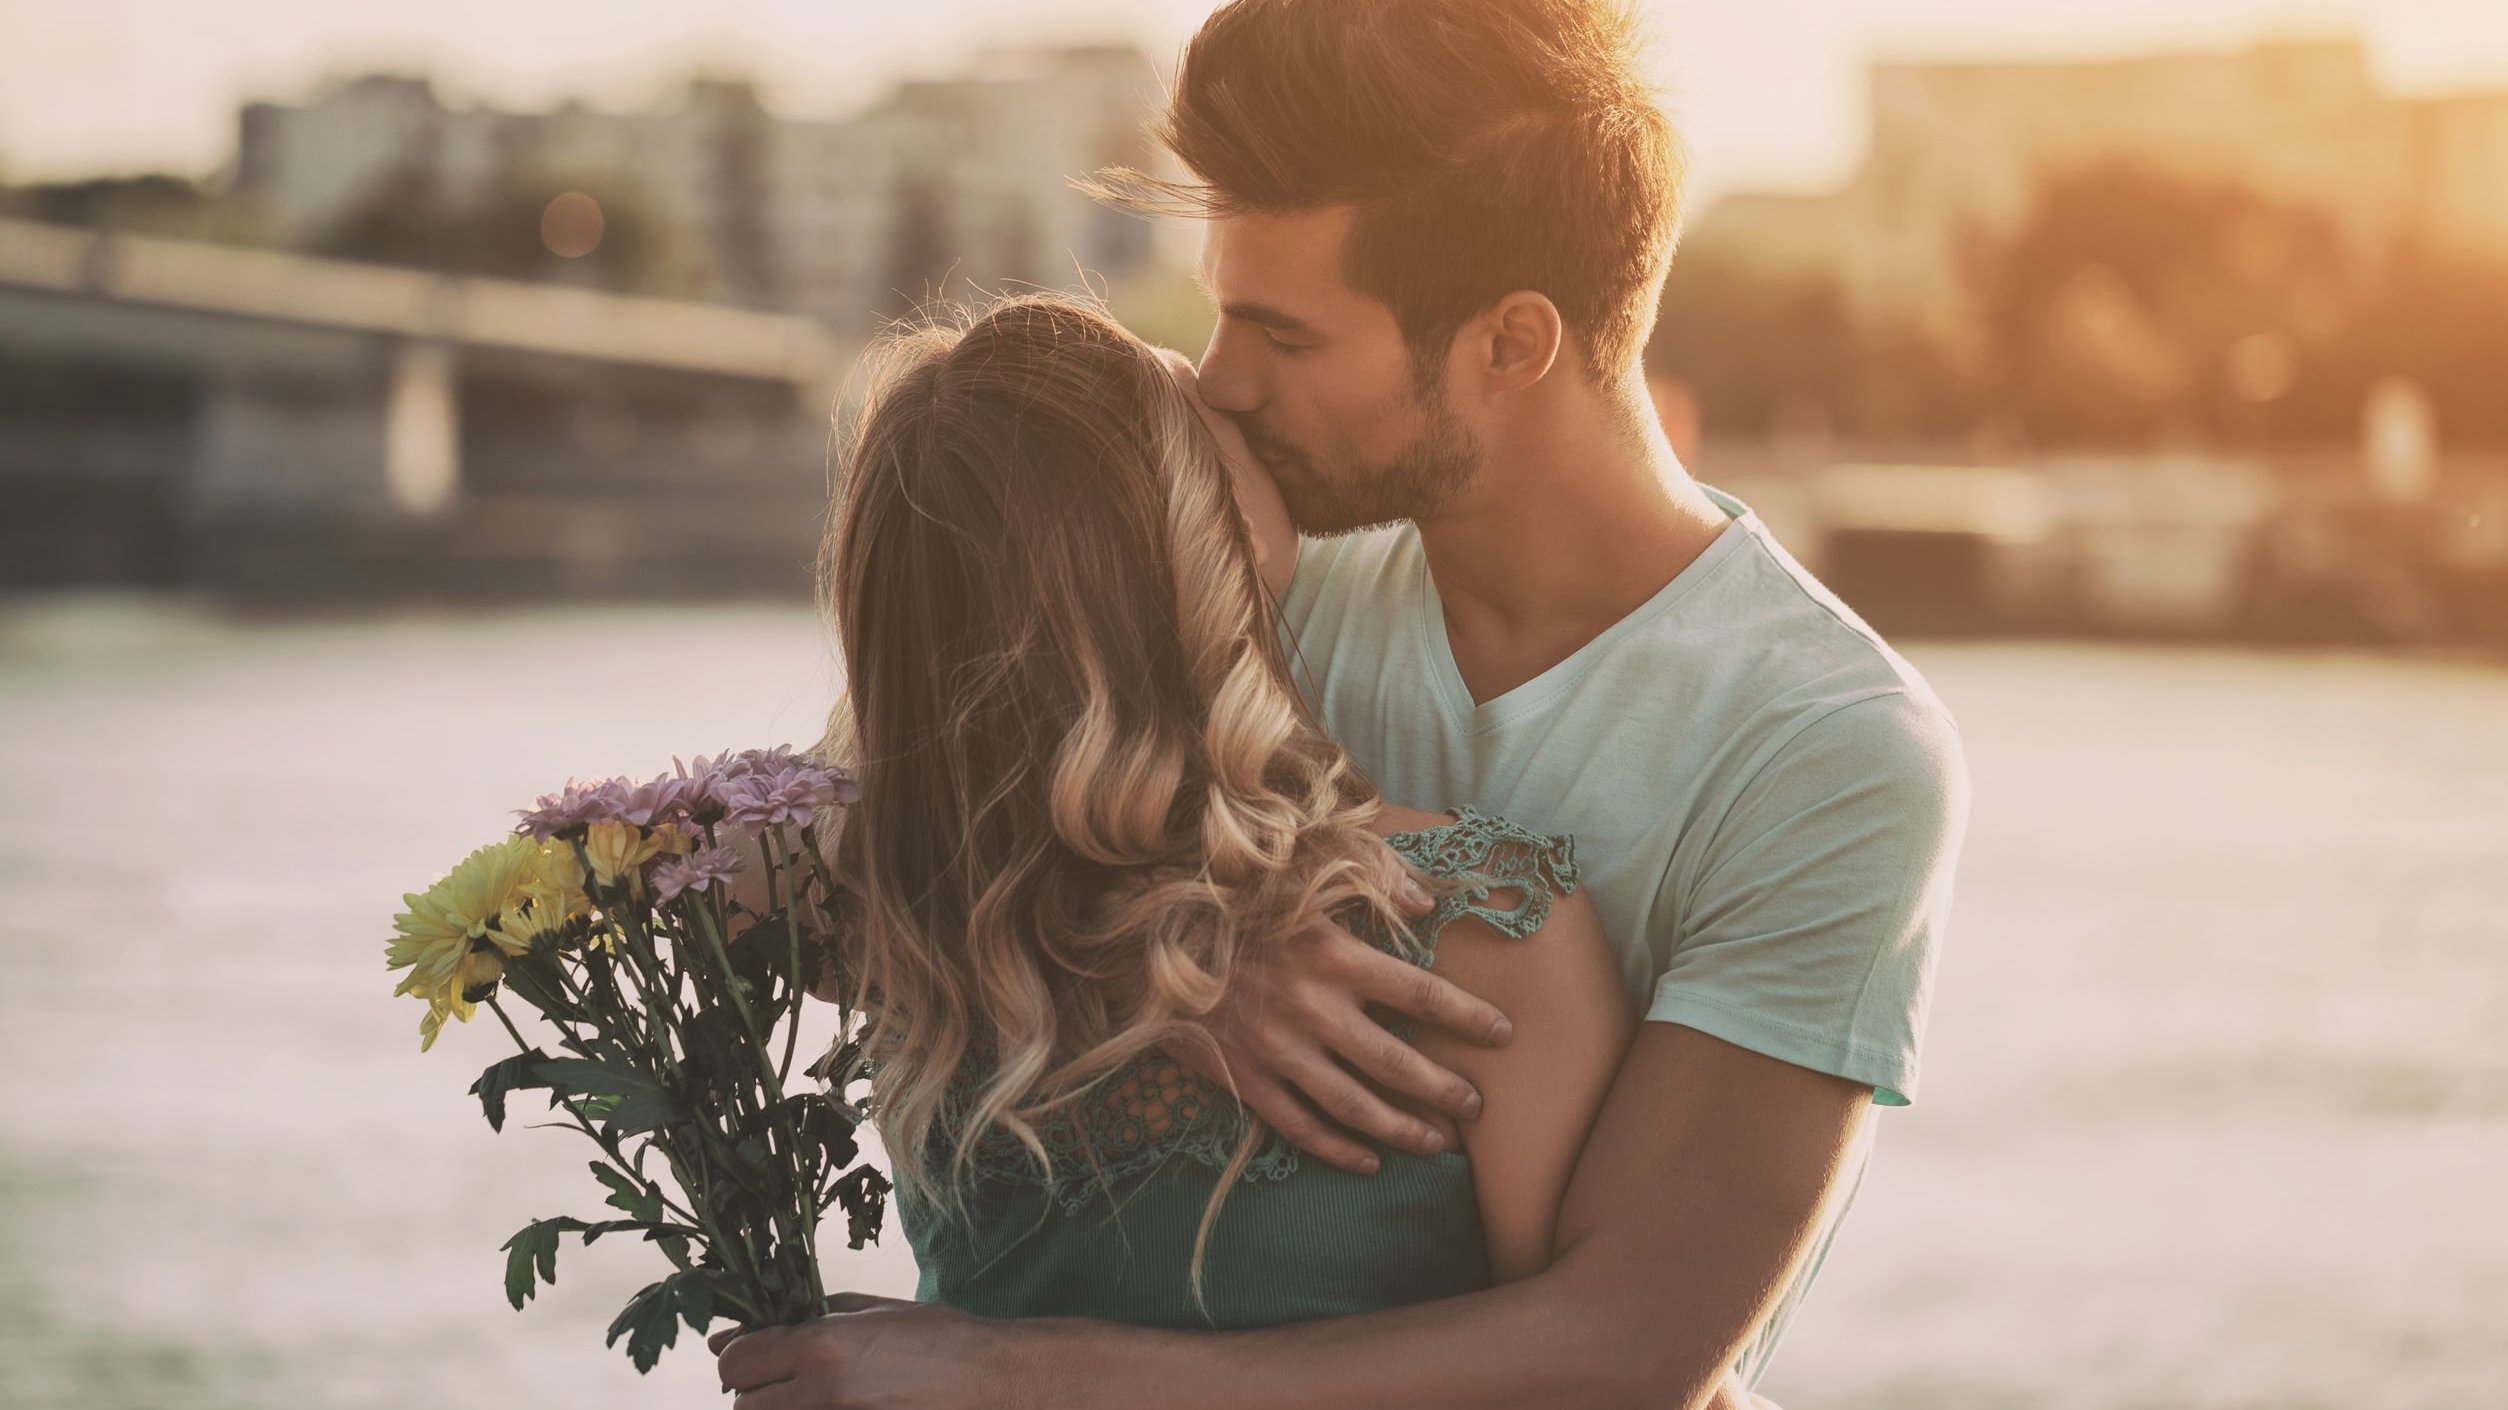 Homem com buquê de flores em uma das mãos abraça mulher enquanto beija o rosto dela.